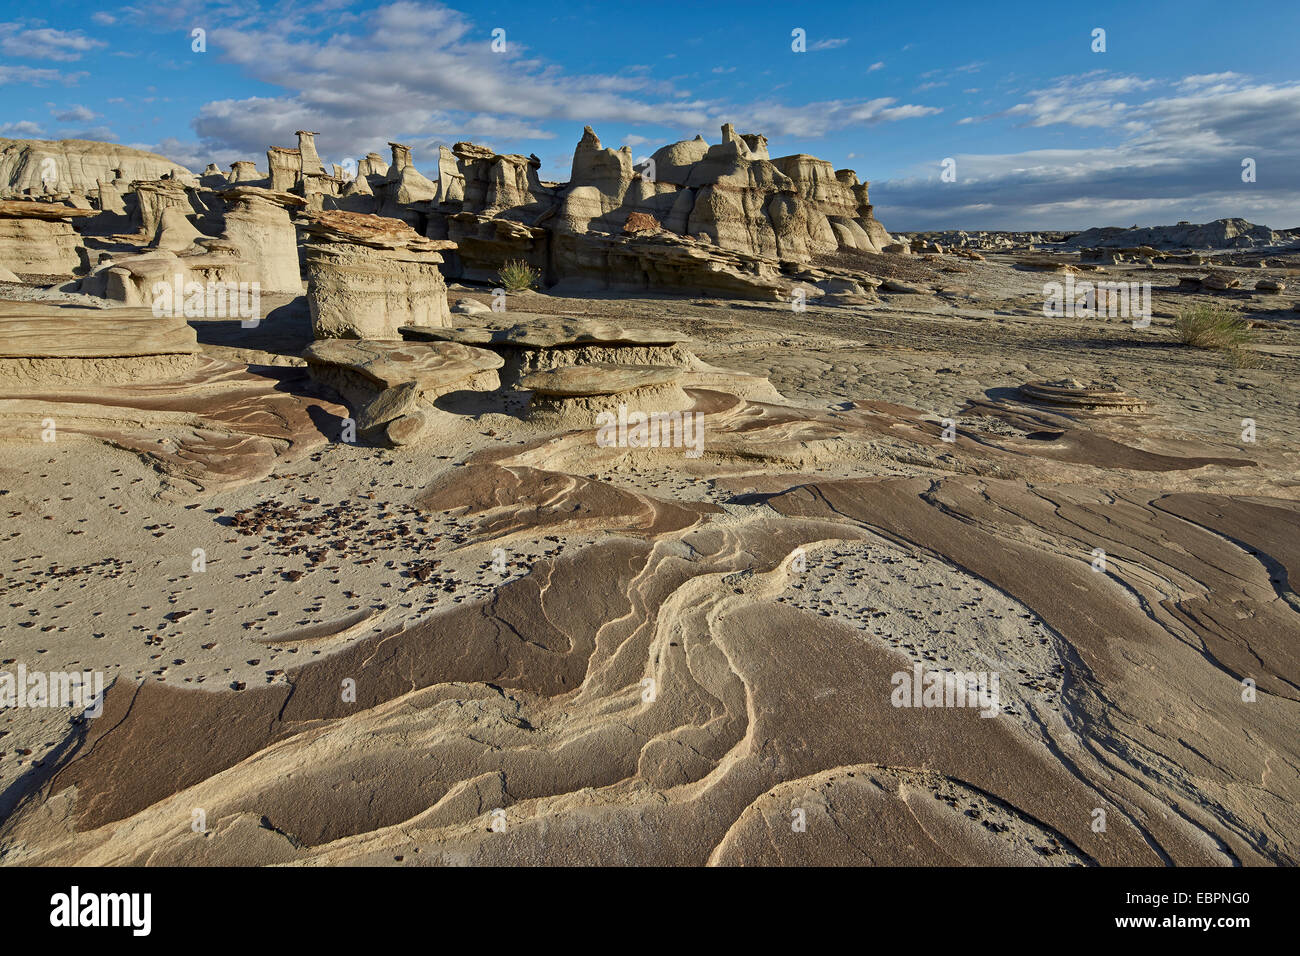 Les couches de roches dans les badlands, Bisti Wilderness, Nouveau Mexique, États-Unis d'Amérique, Amérique du Nord Banque D'Images